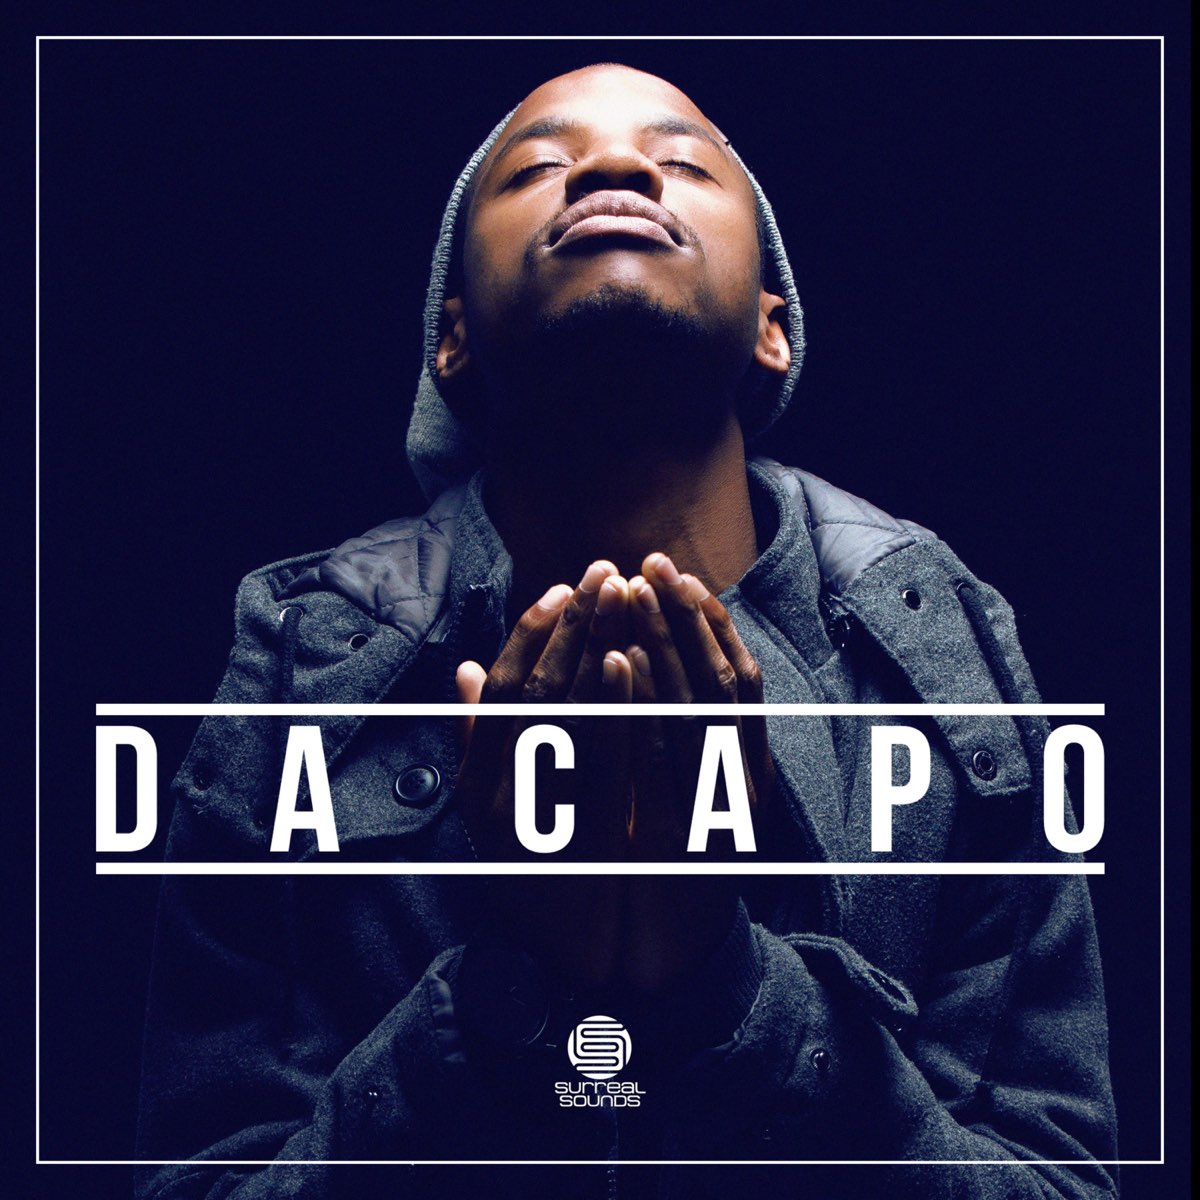 ‎Da Capo - Album by Da Capo - Apple Music